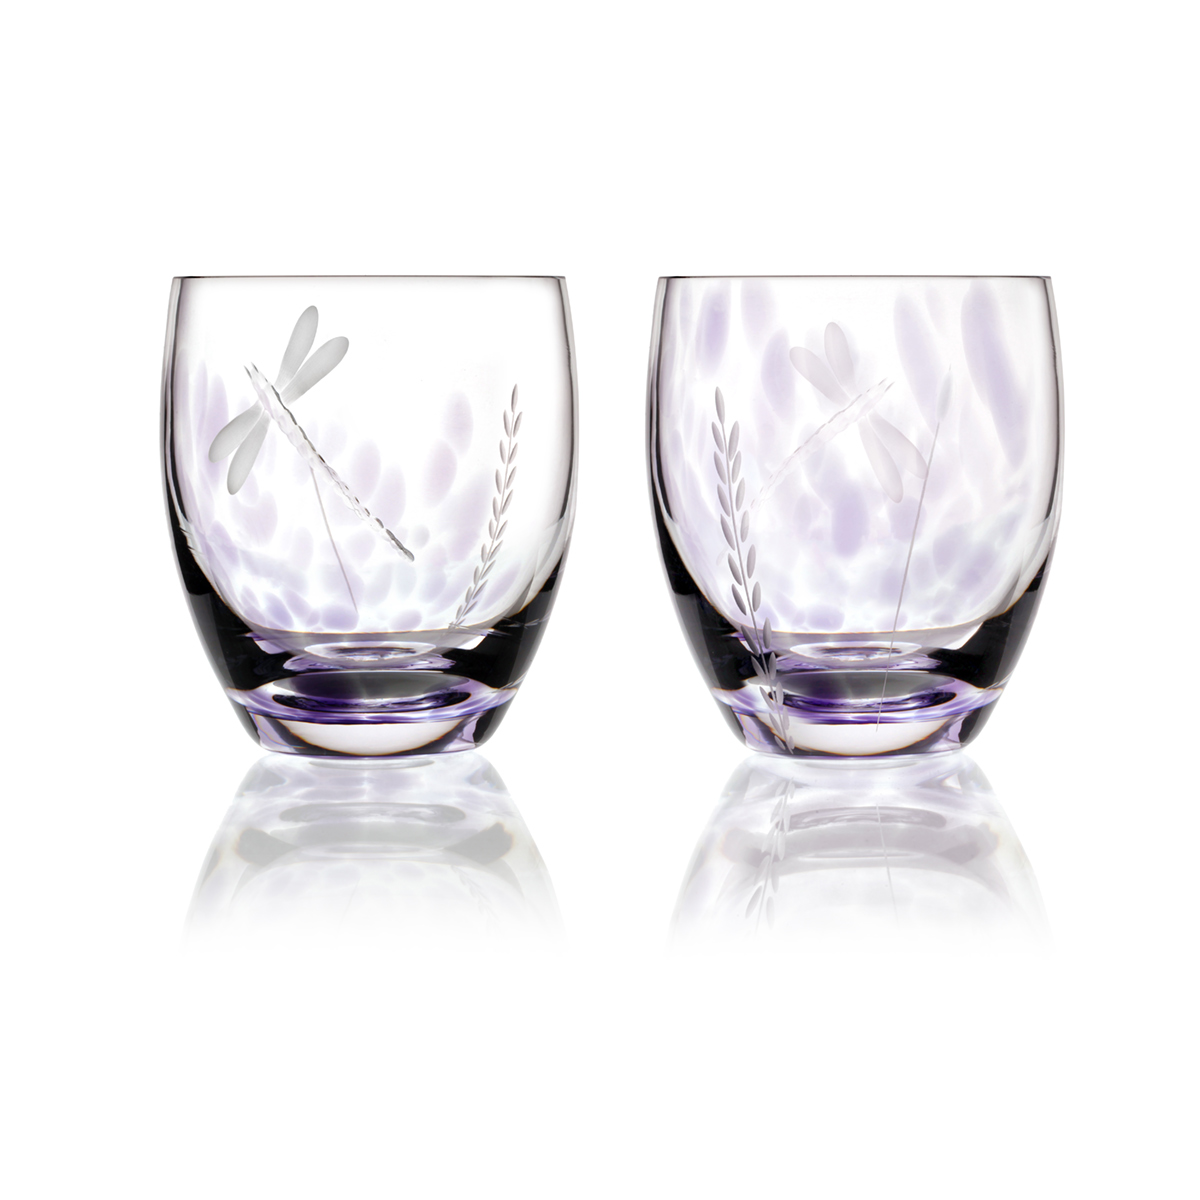 2 x Wild Heather Whiskey Tumbler - Handgefertigtes Kristallglas aus Irland